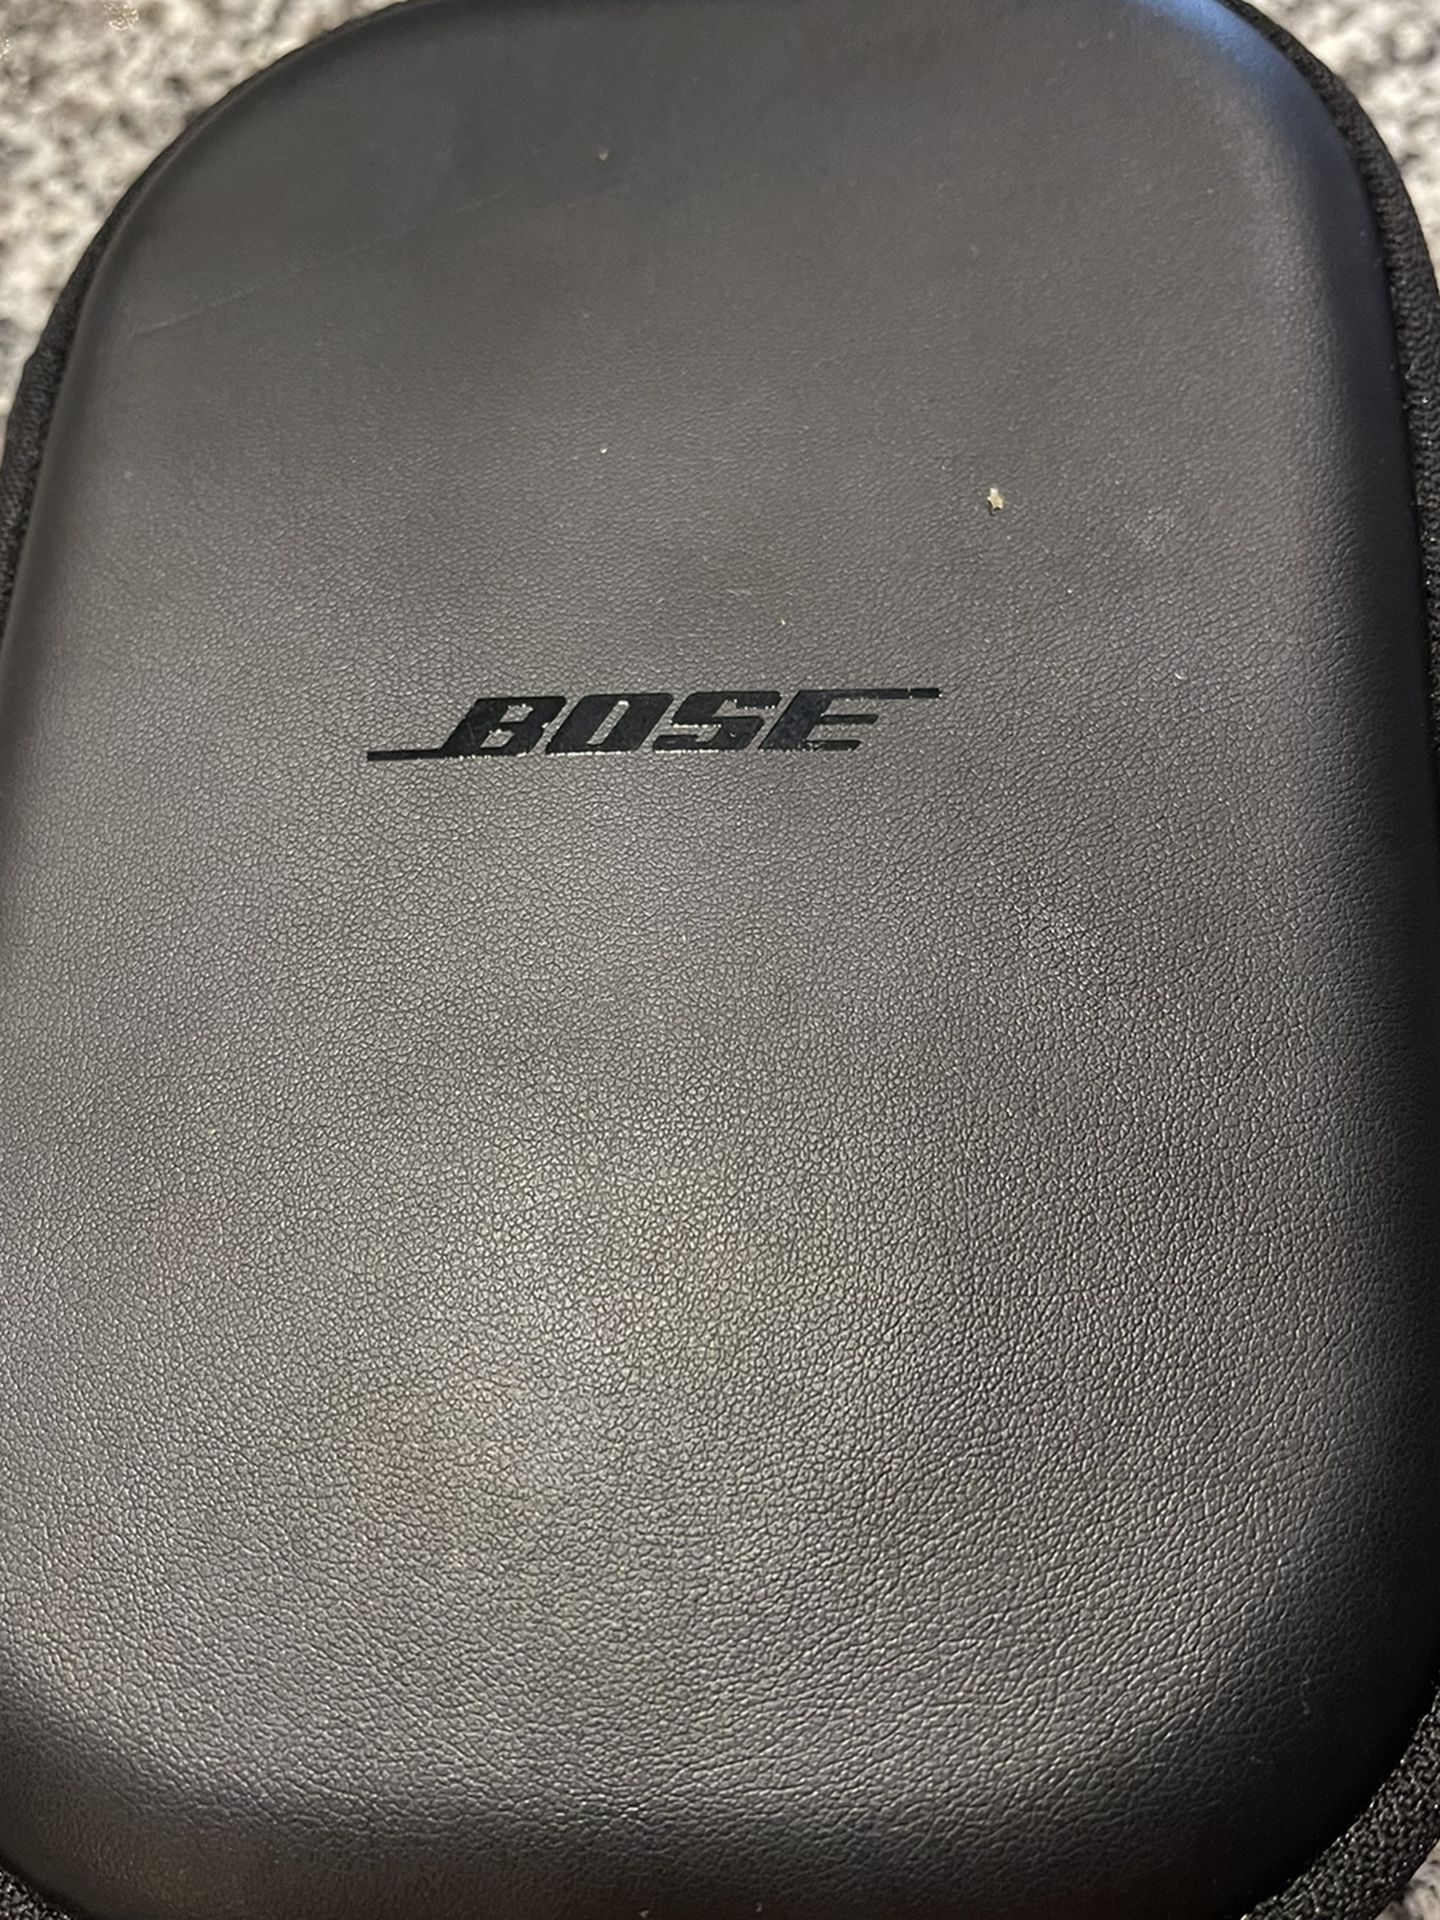 Bose Quiet Comfort 35